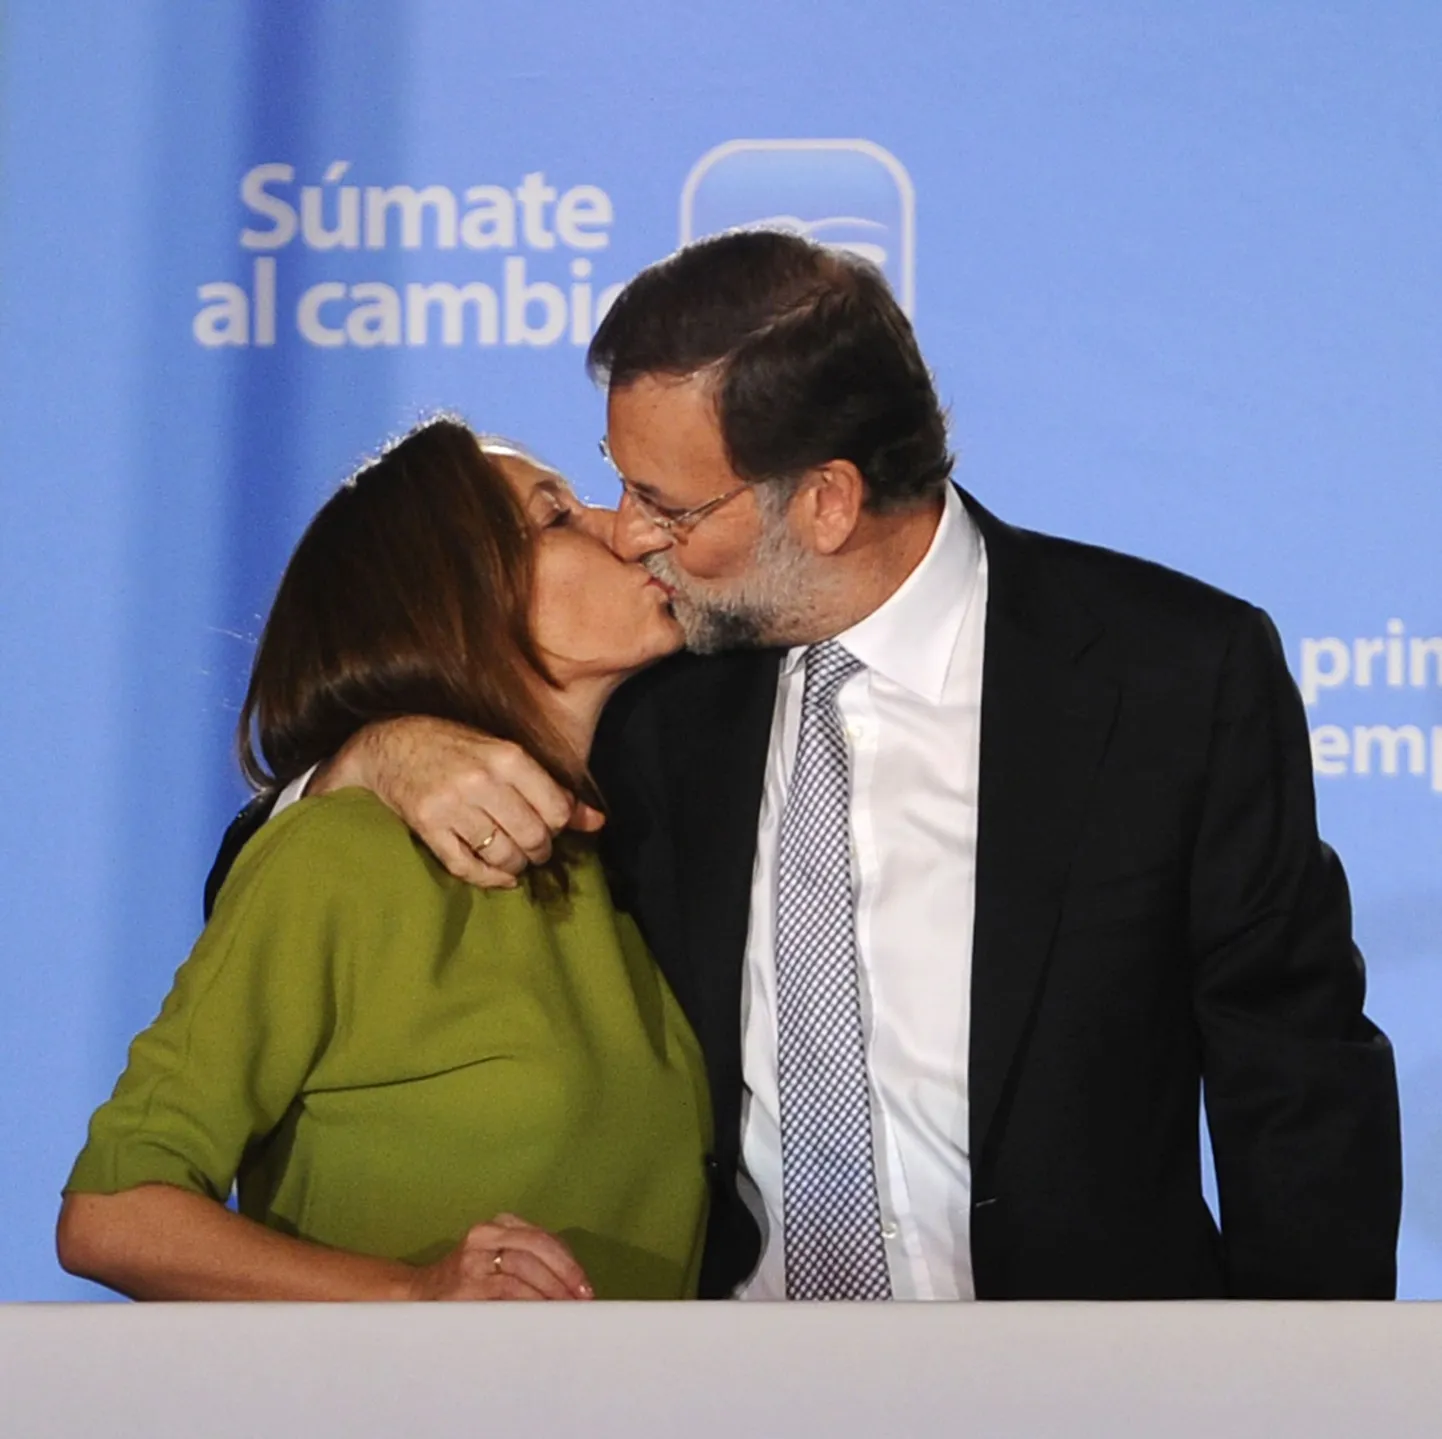 Hispaania valimised võitnud konservatiivse Rahvaerakonna liider Mariano Rajoy suudlemas valimisõhtul abikaasa Elvira Fernandezt.